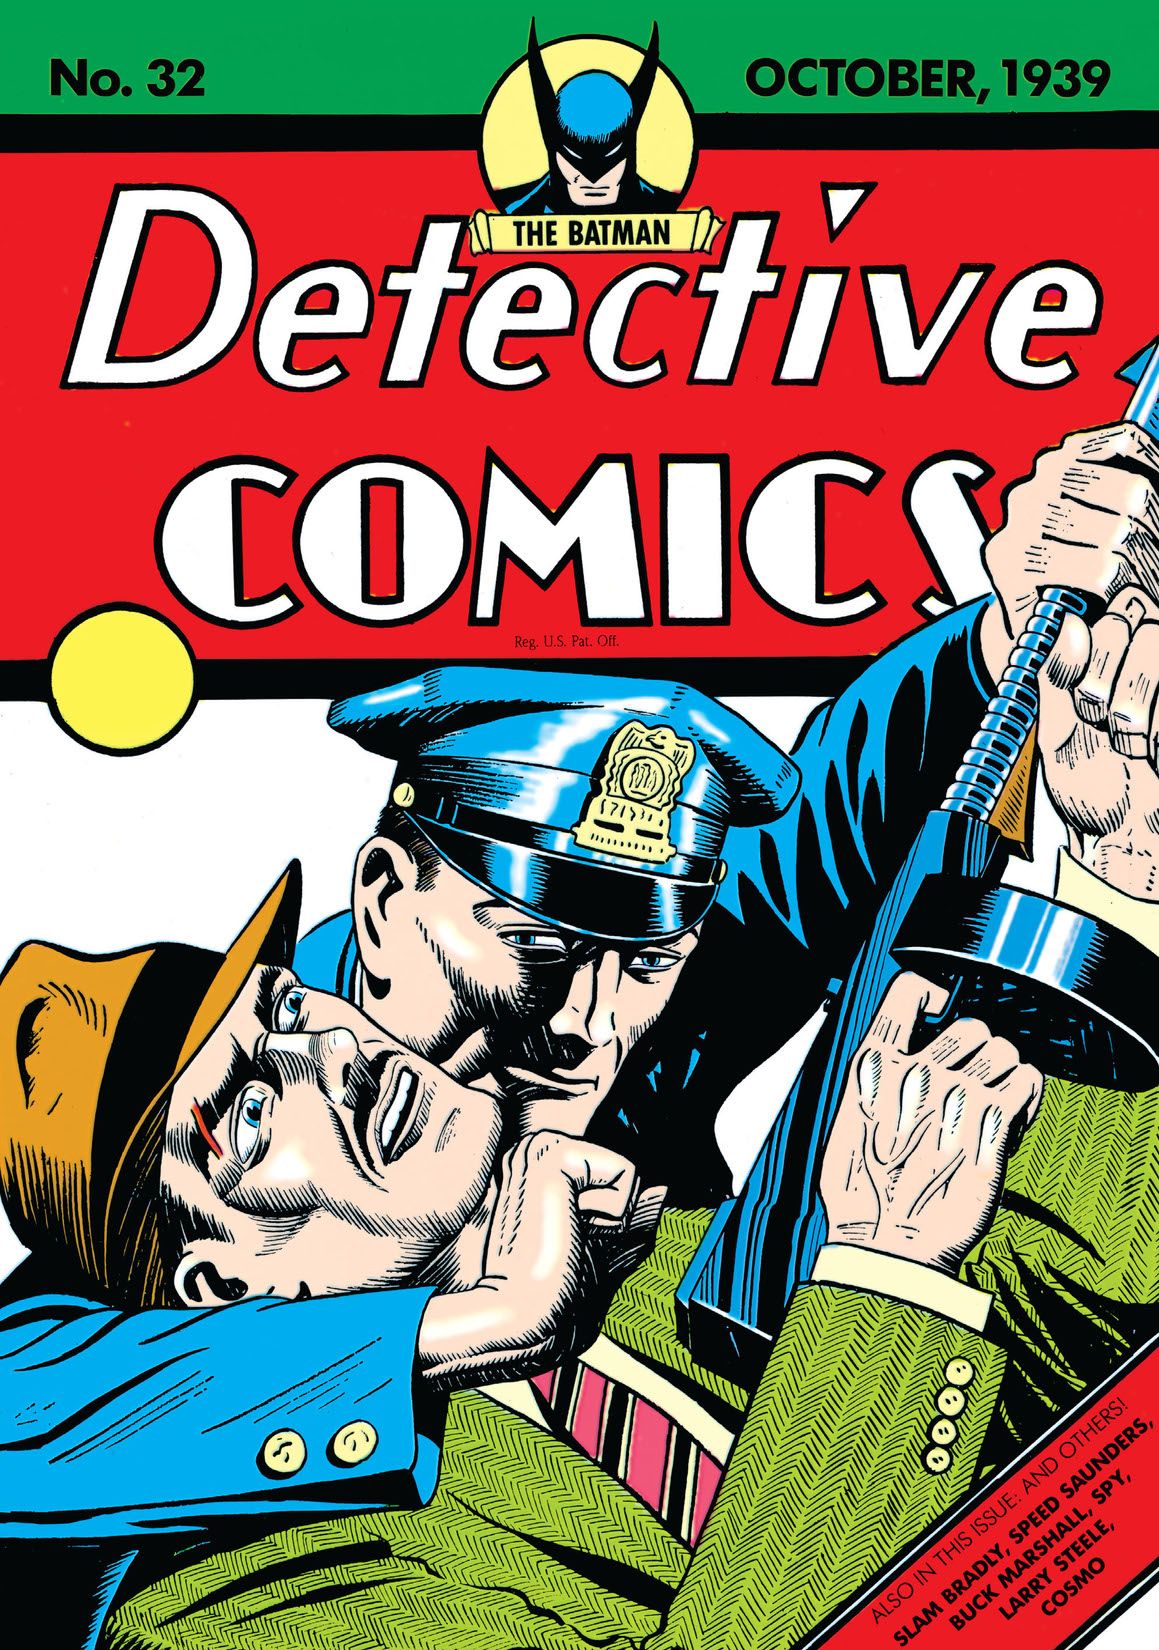 bandes dessinées policières 32 un policier tient un gangster dans un étranglement